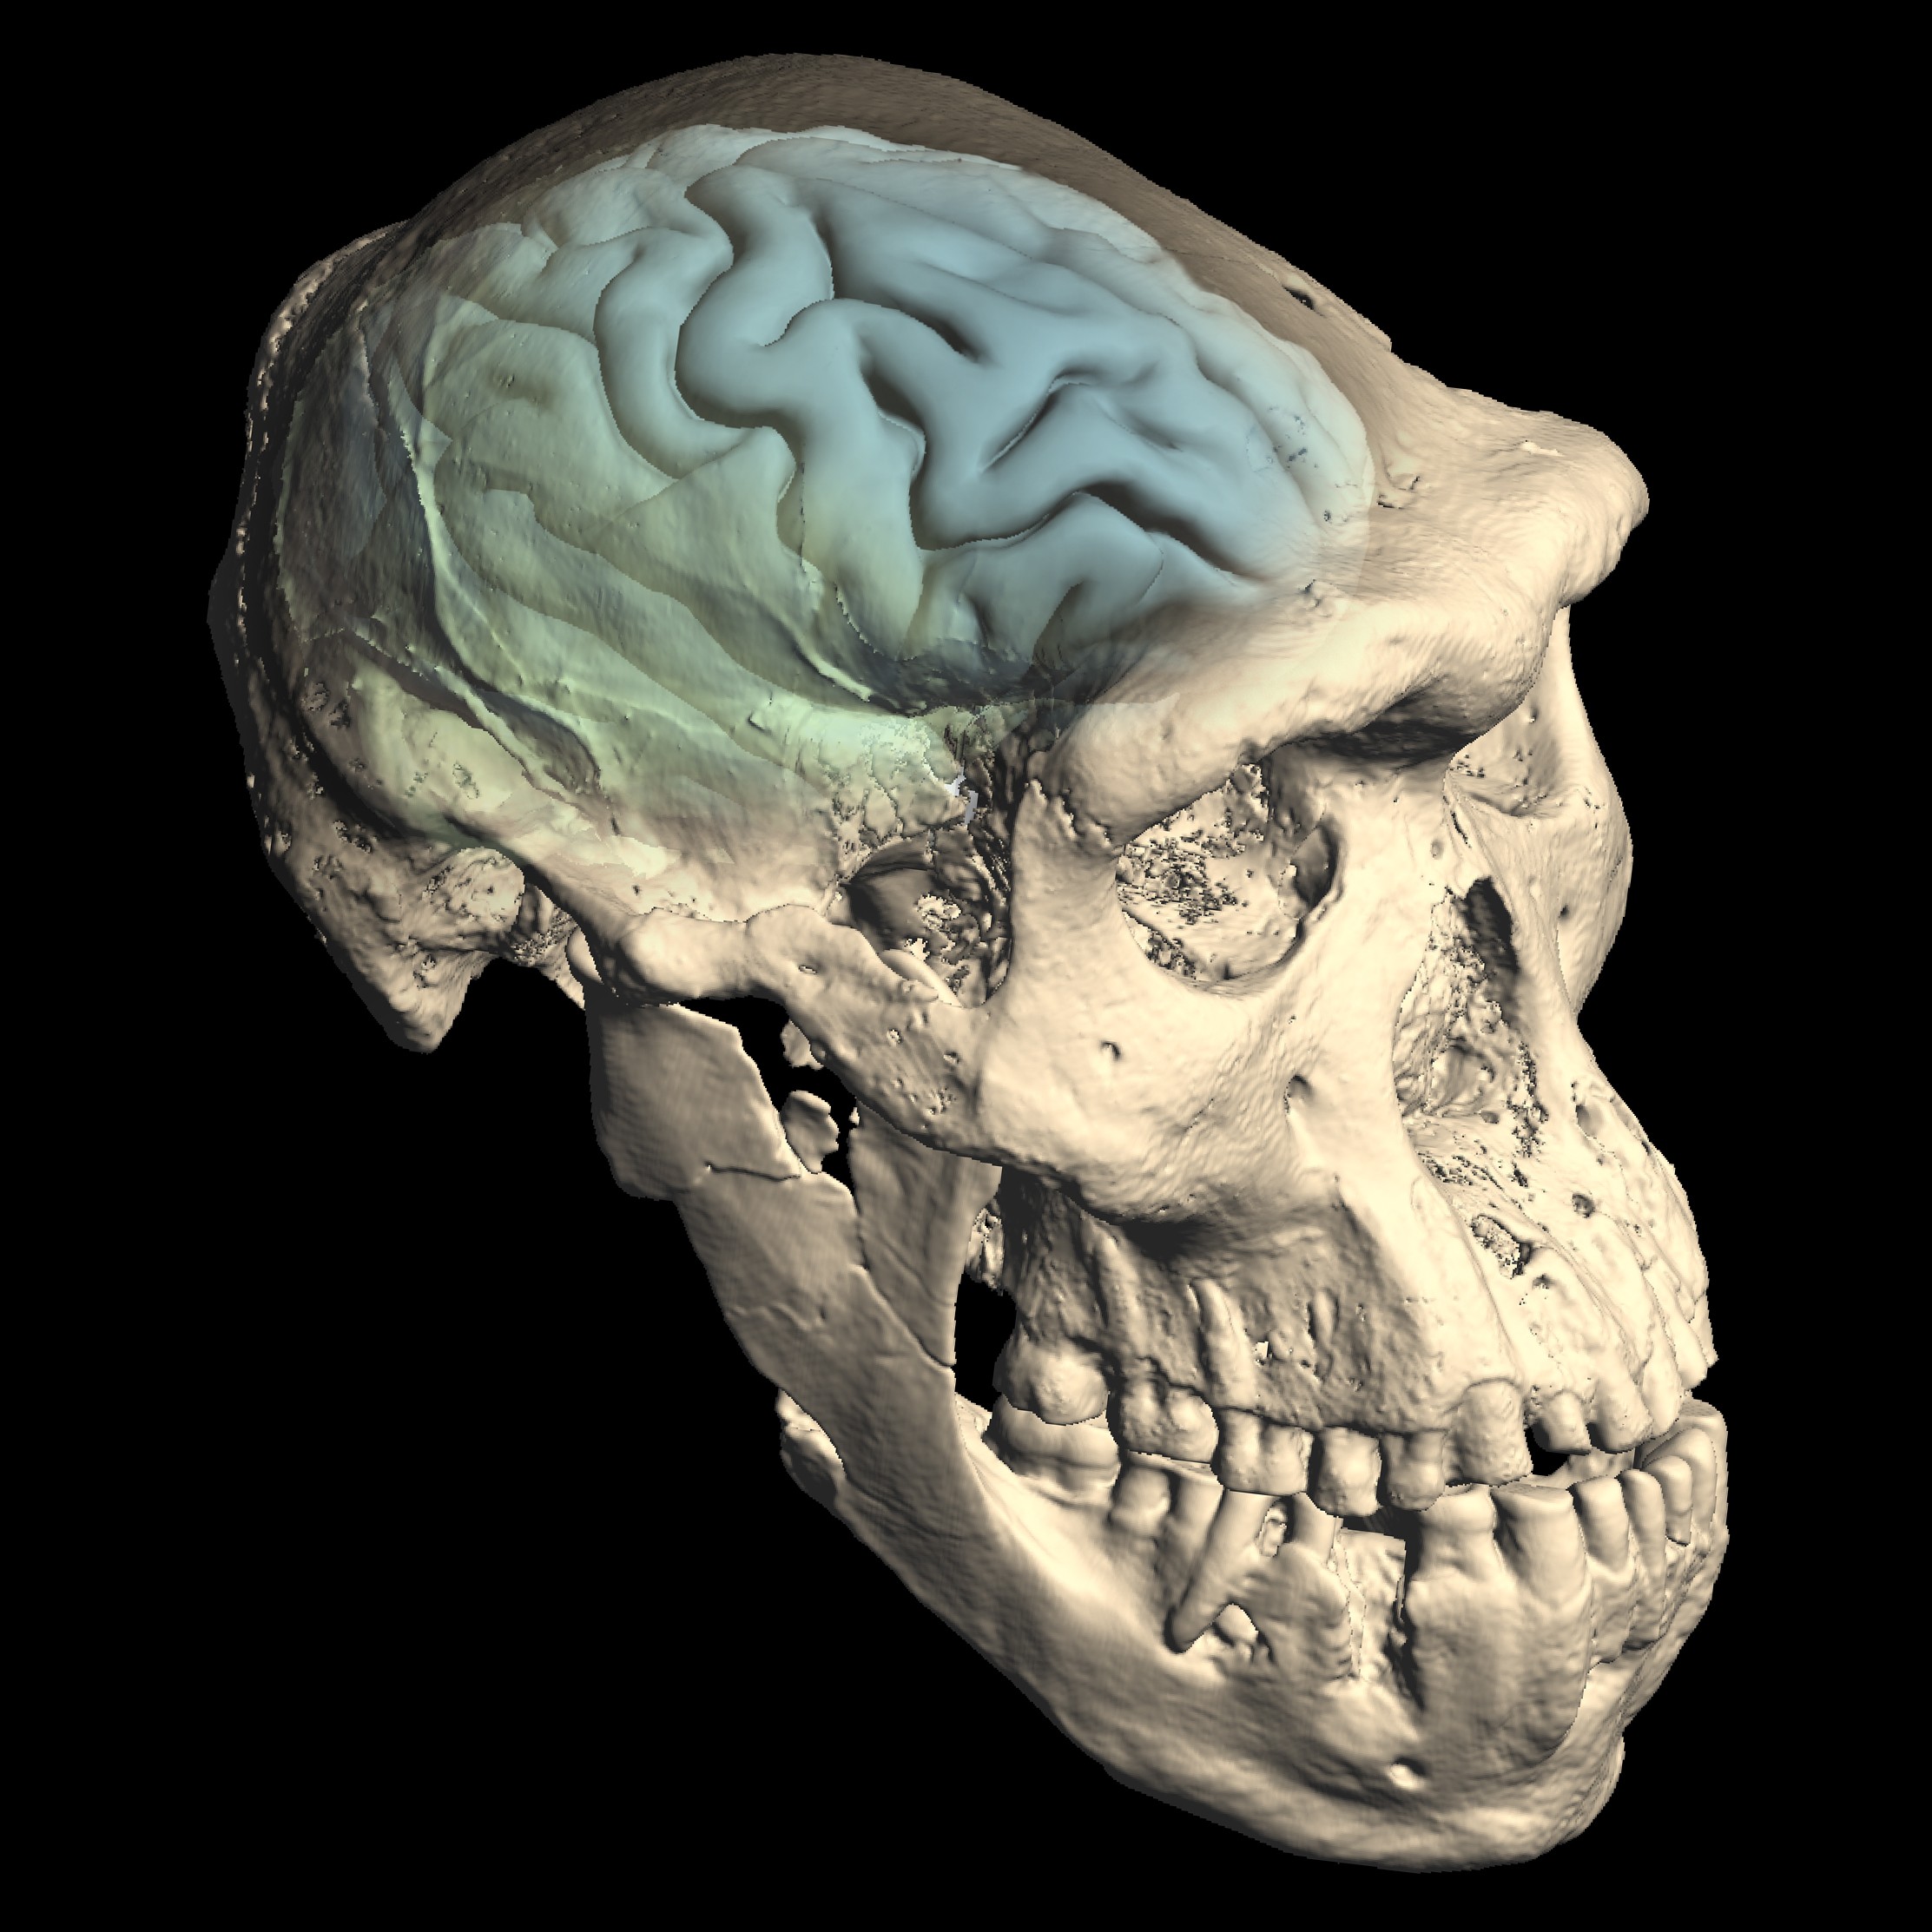 Crânio do Homo primitivo de Dmanisi, da região atual da Geórgia (Foto: M. Ponce de León und Ch. Zollikofer, UZH)